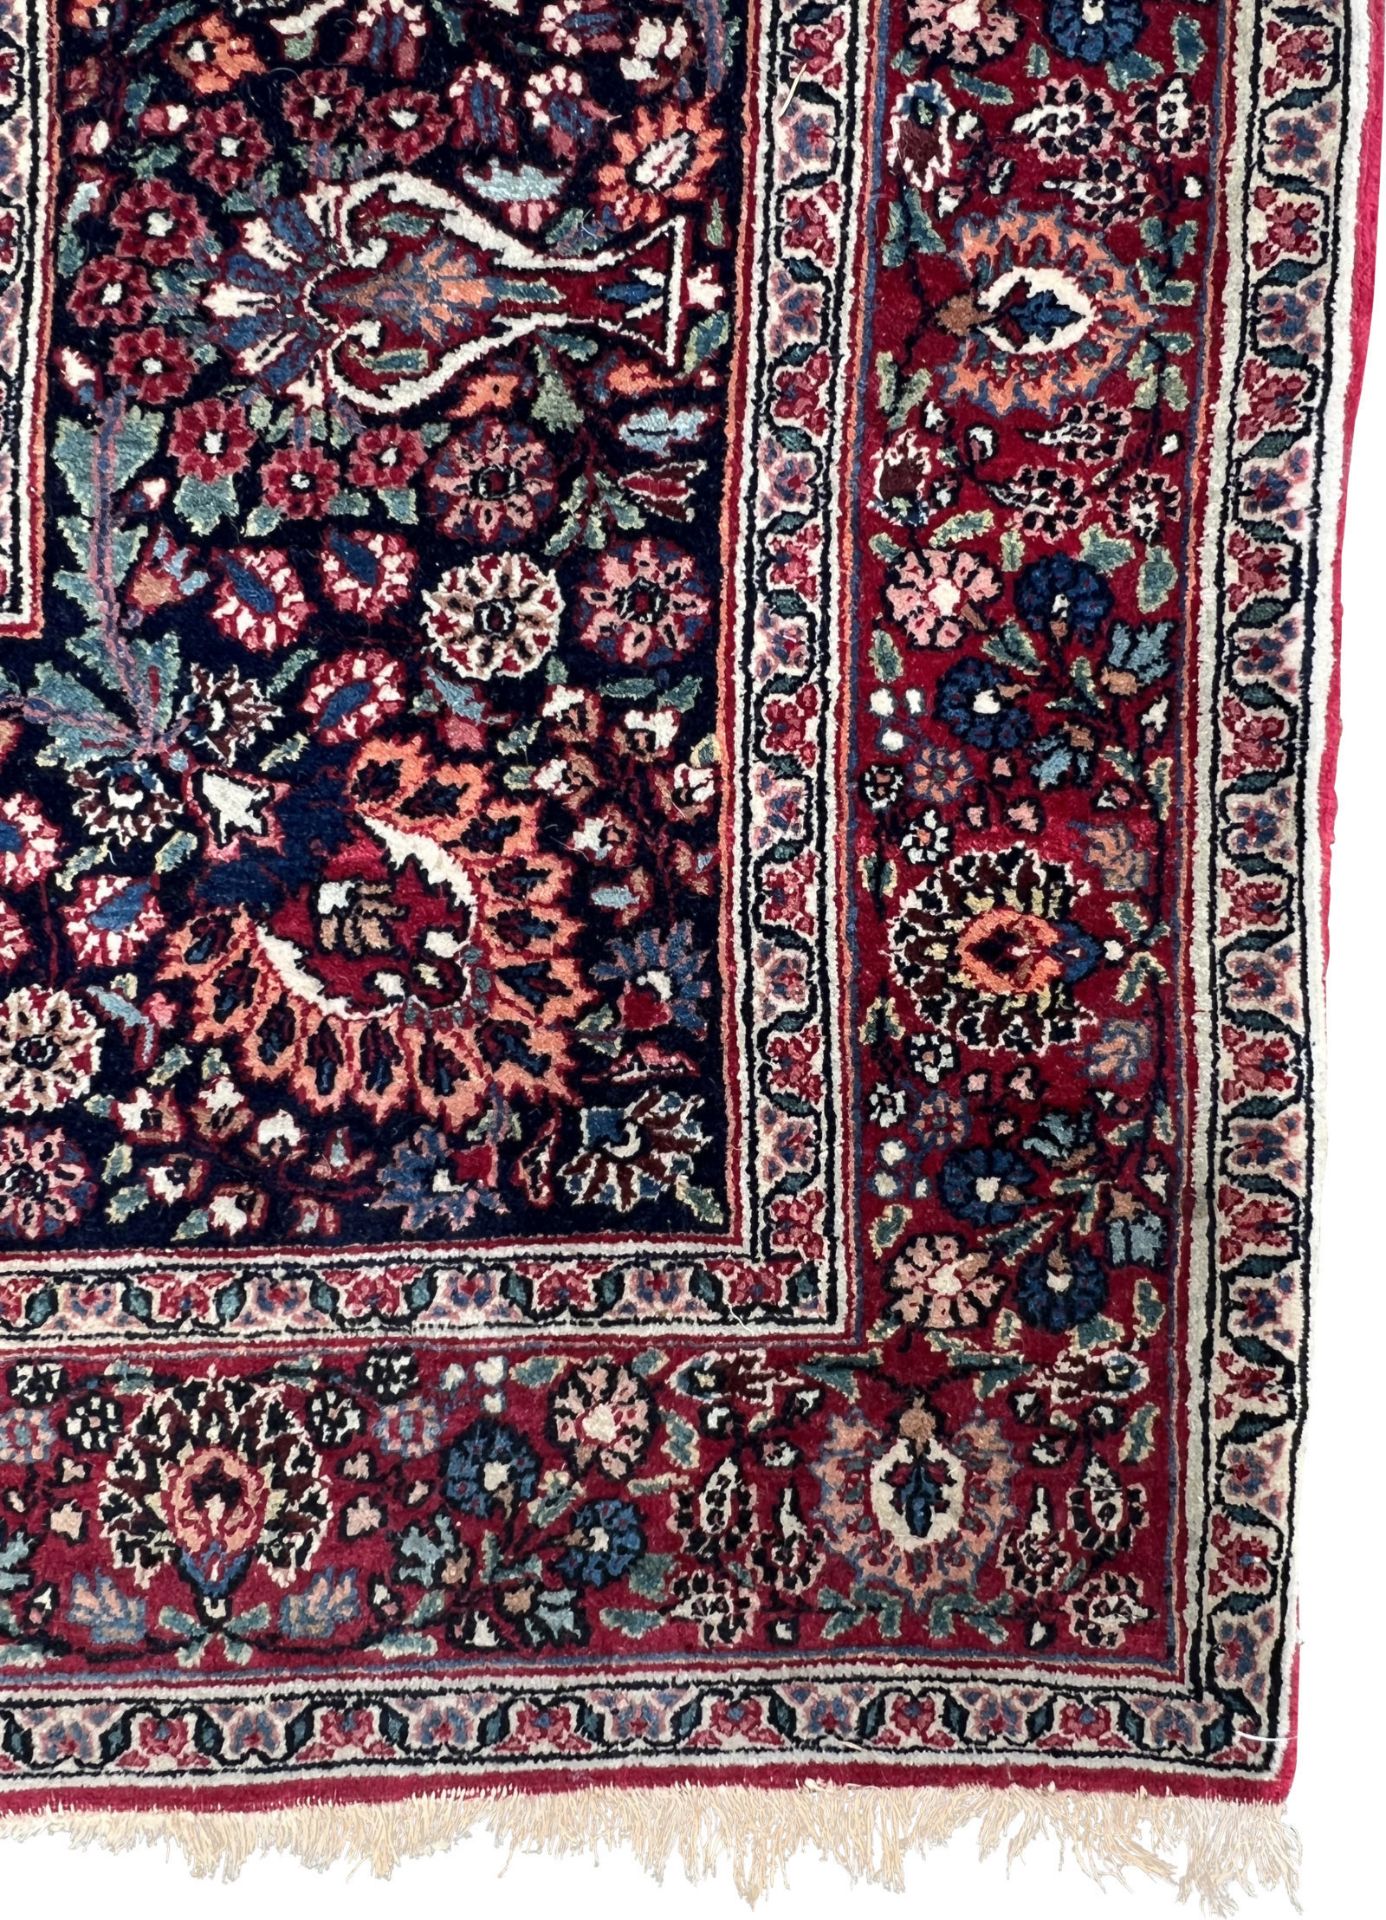 Mesched Salonteppich. Persien. Um 1900. Antik. Signiert ''Hamid Hadawi''. - Bild 15 aus 17